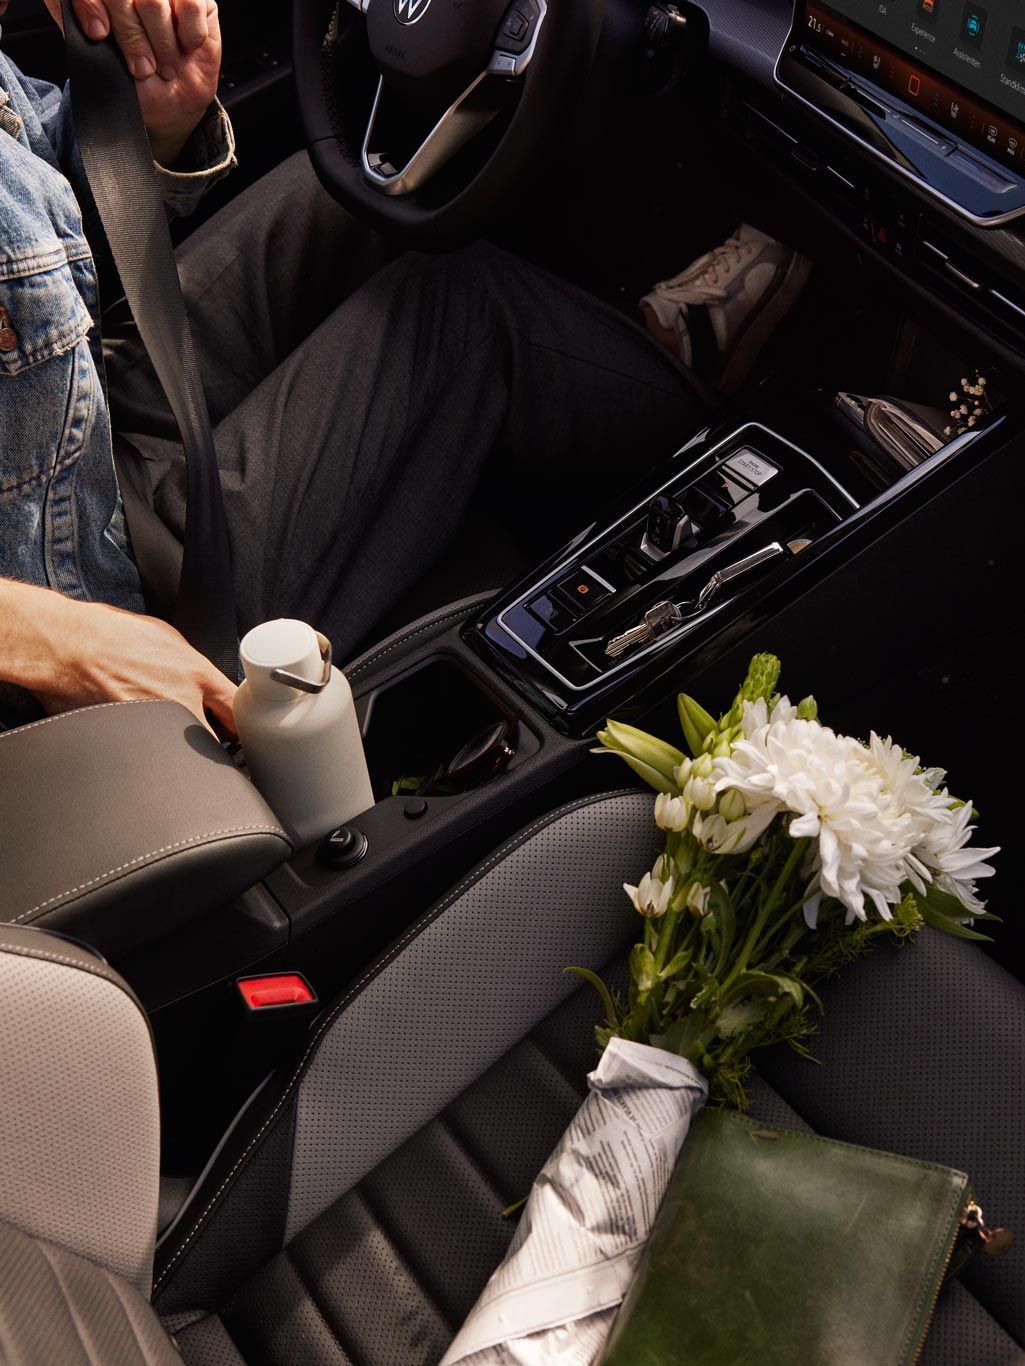 Ein Mann sitzt auf dem Fahrersitz eines VW Golf und schnallt sich an, auf dem Beifahrersitz liegen Blumen